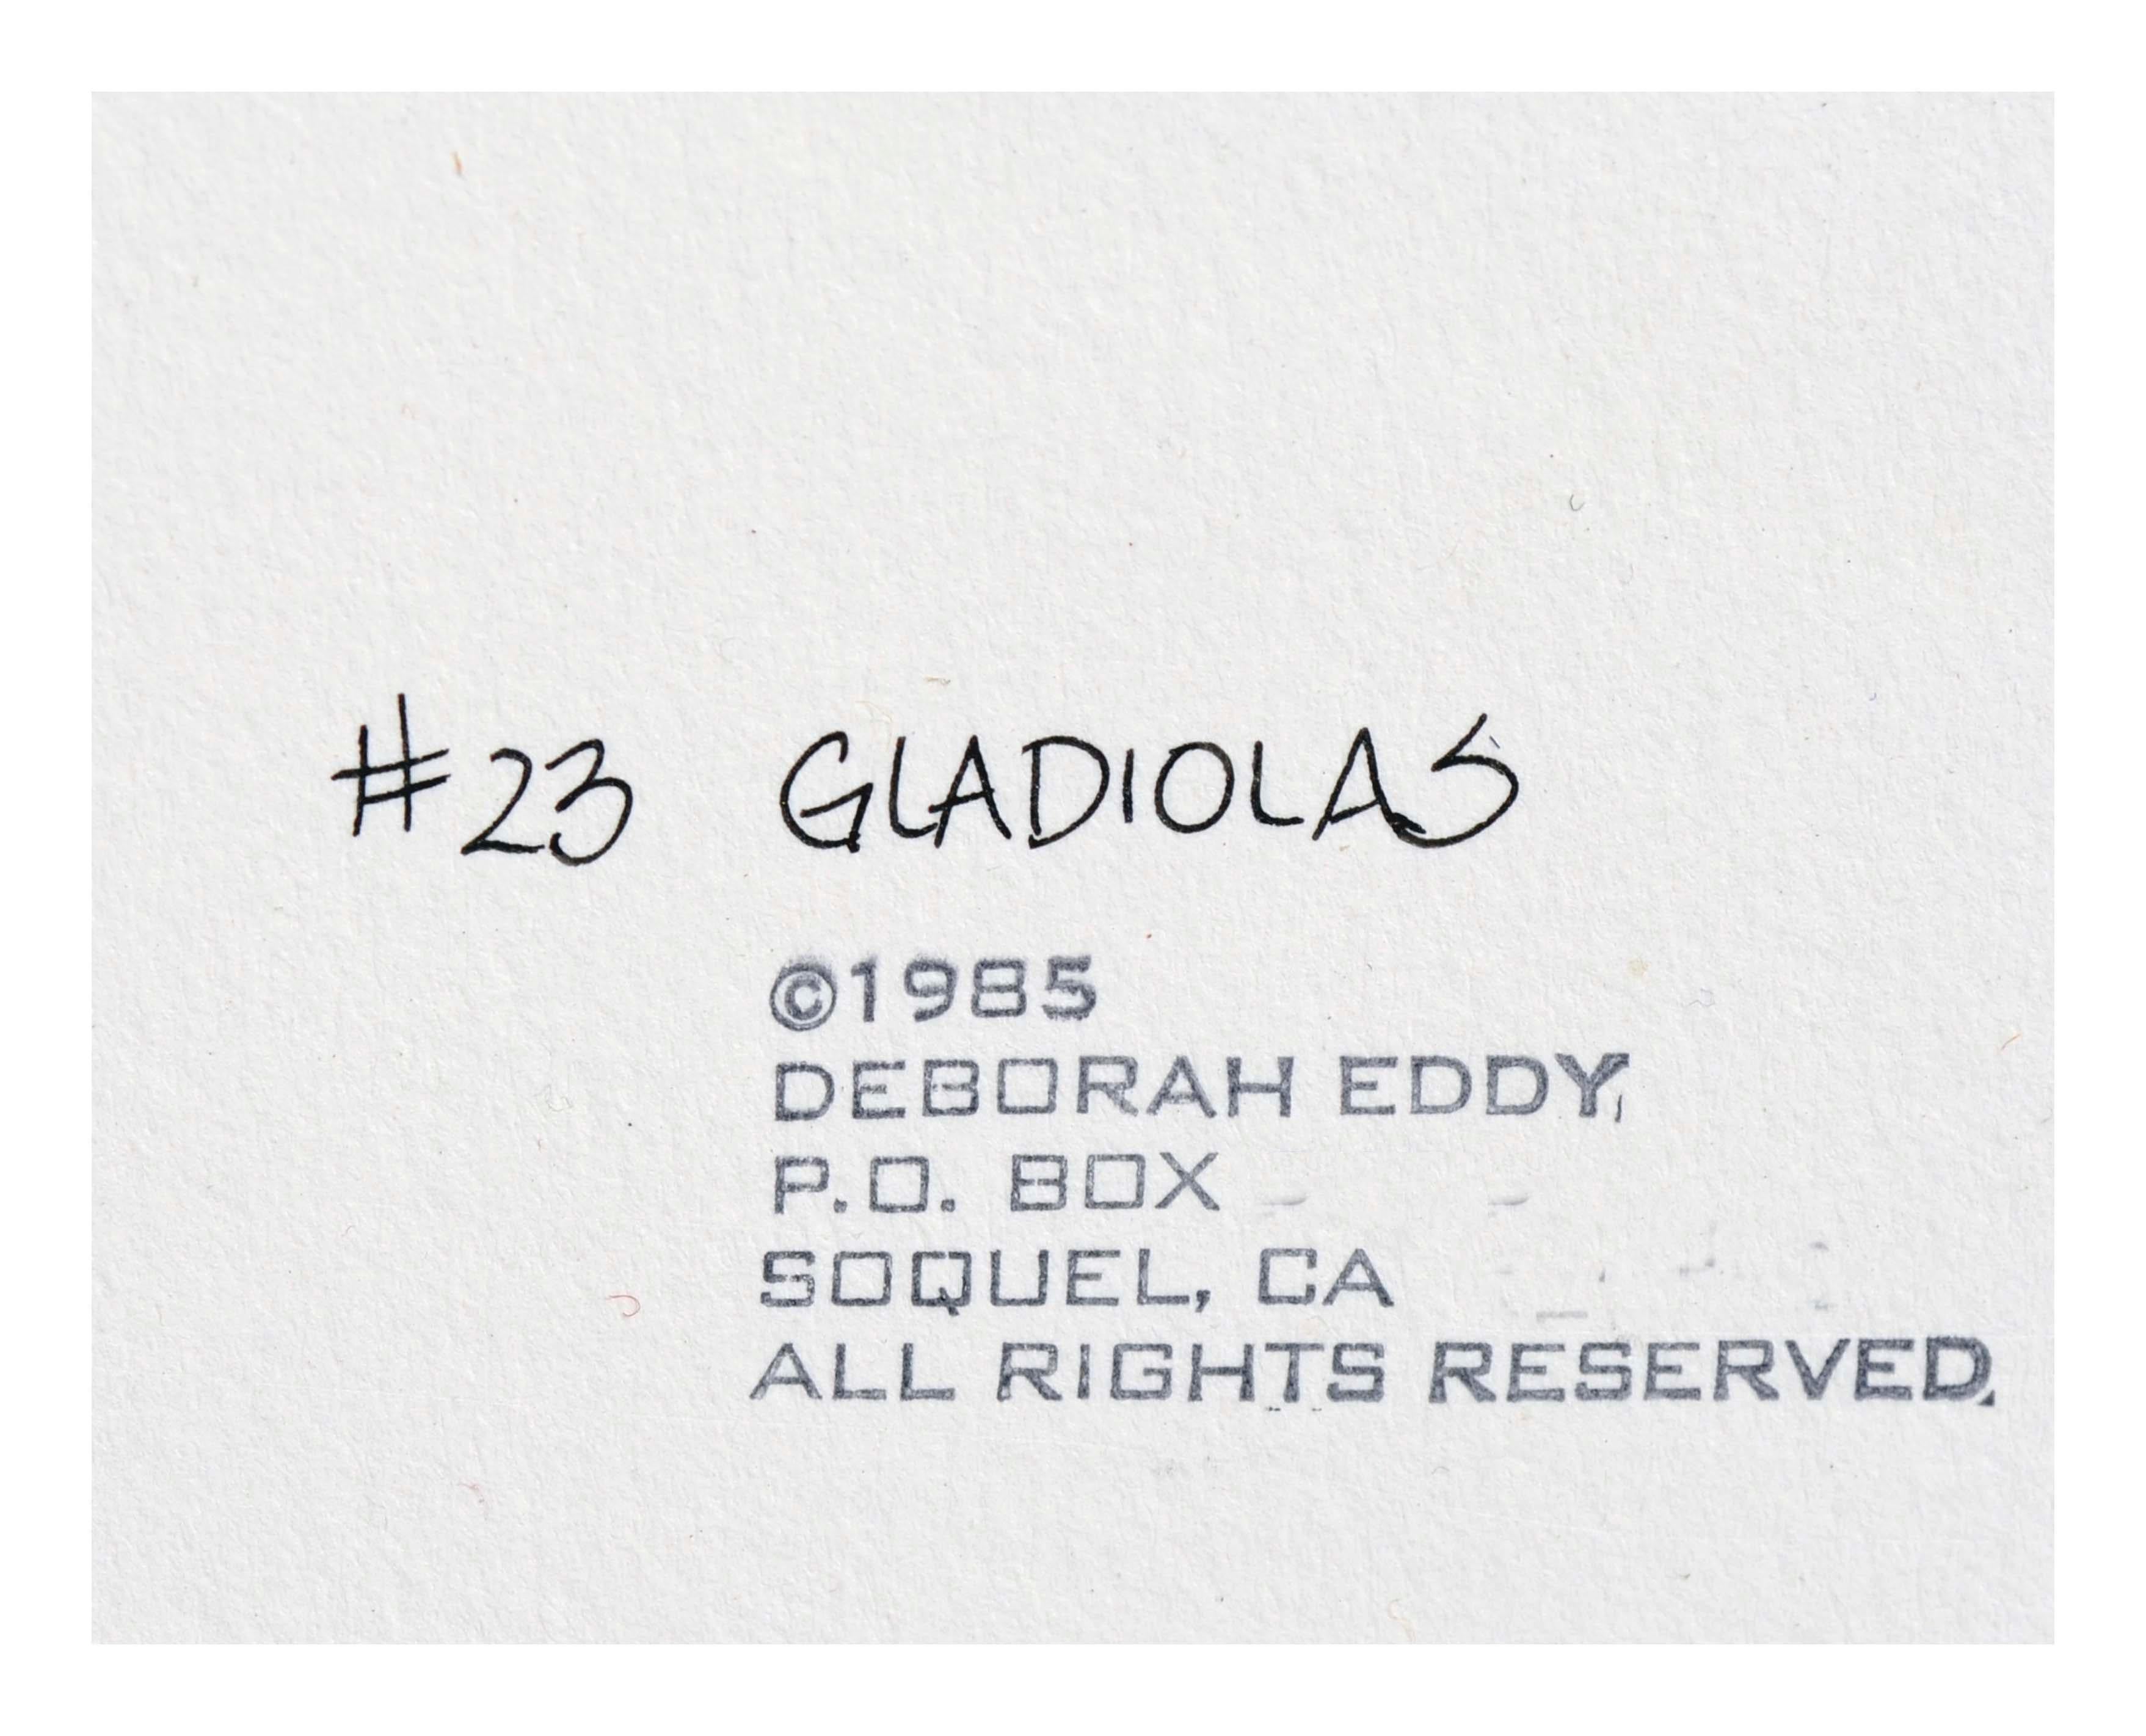 Lebendige Aquarell-, Feder- und Tuschestudie roter Gladiolen mit brillanter Detailgenauigkeit und einem unverkennbar zarten Stil der kalifornischen Künstlerin Deborah Eddy (Amerikanerin, geb. 1943). Signiert 